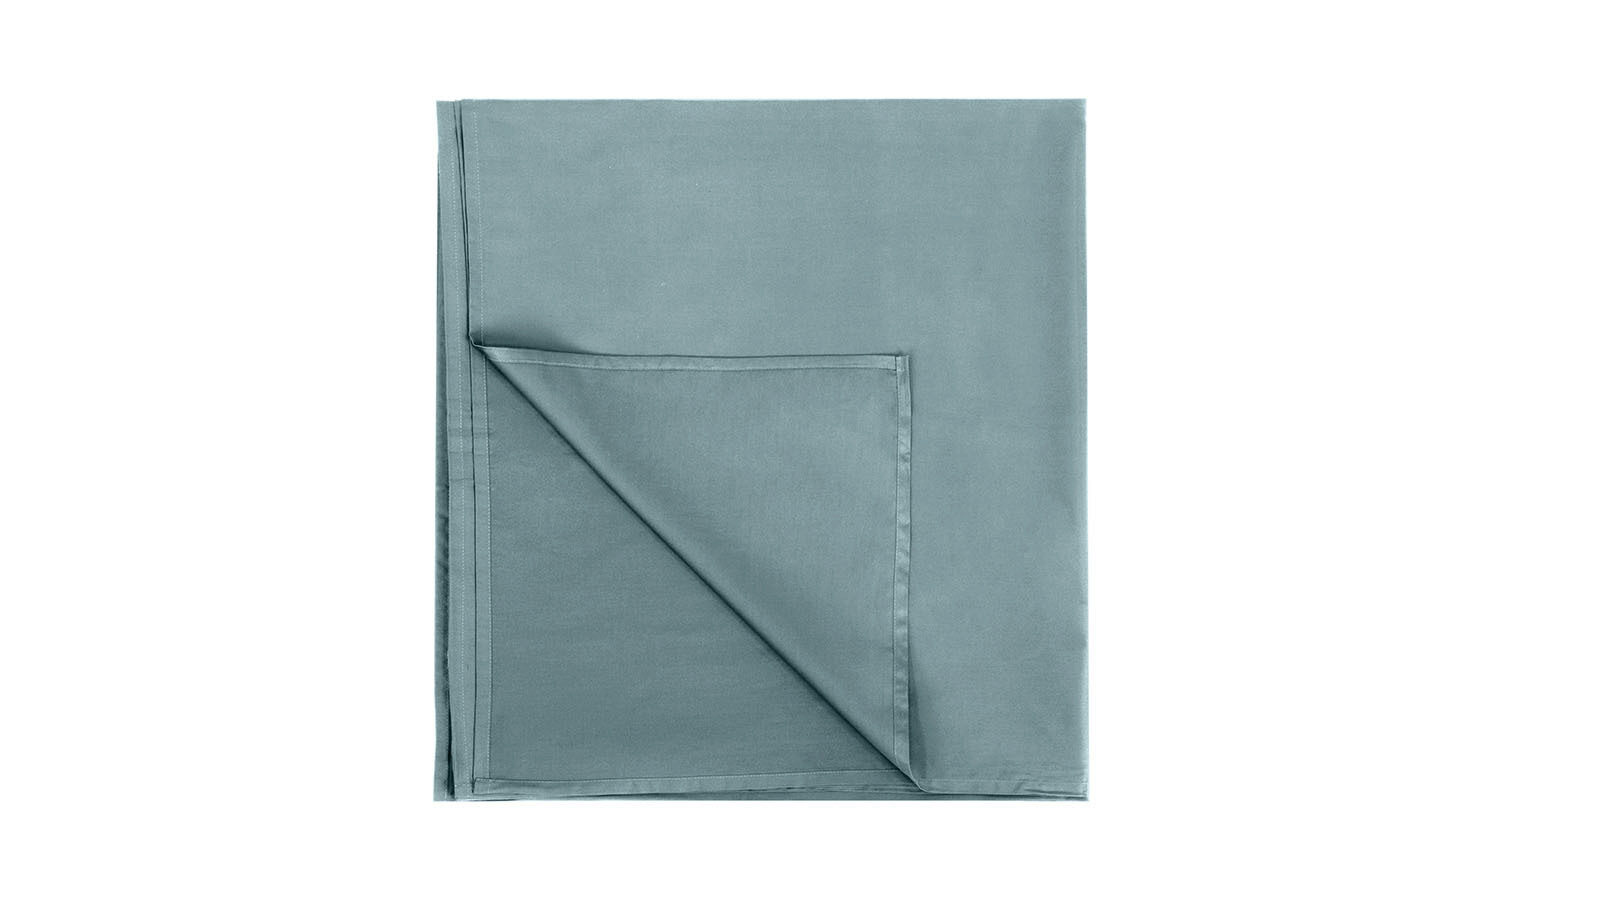 Простыня без резинки Comfort Cotton, цвет: Серо-голубой простыня sms стандарт 01 462 70 80 см голубой 100 шт